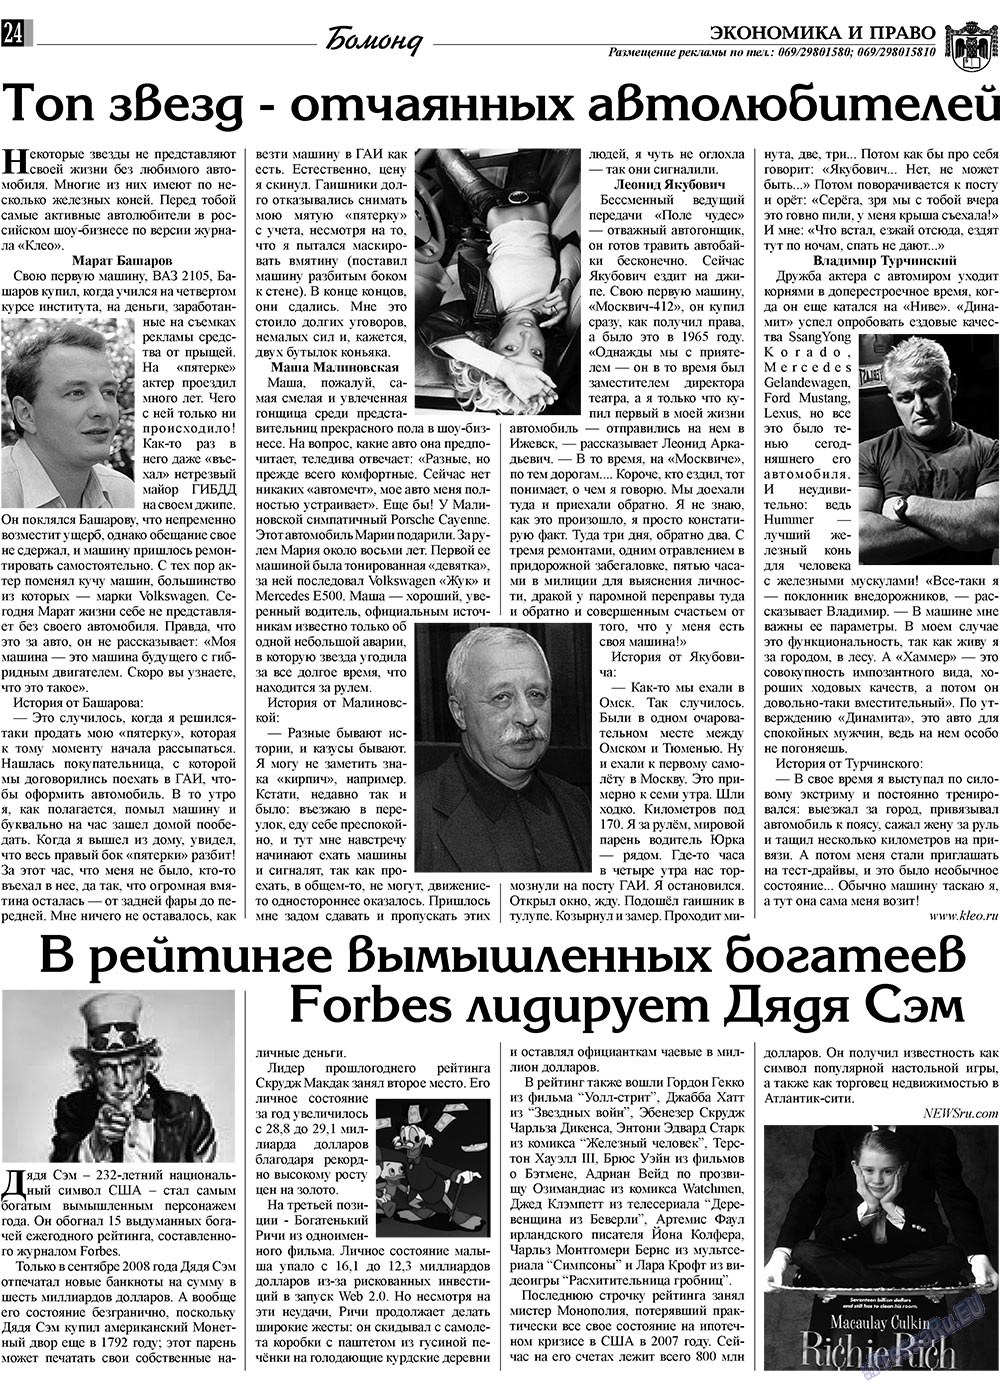 Экономика и право, газета. 2009 №1 стр.24